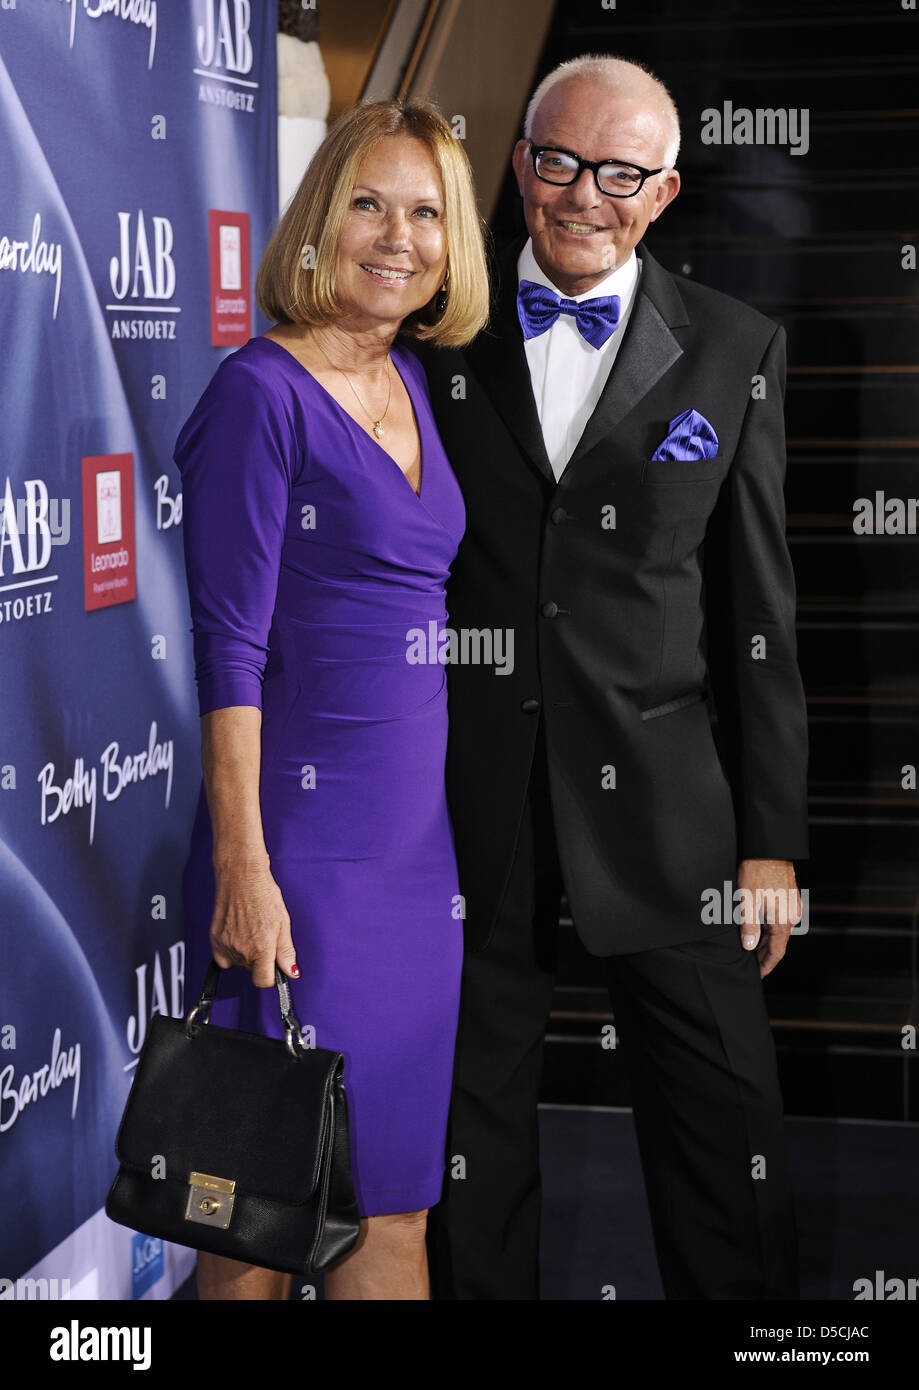 Sybille Beckenbauer und Philipp Keller am Charity Night mit Provision von JAB ANSTOETZ European Ladies Golf Awards 2011. Stockfoto